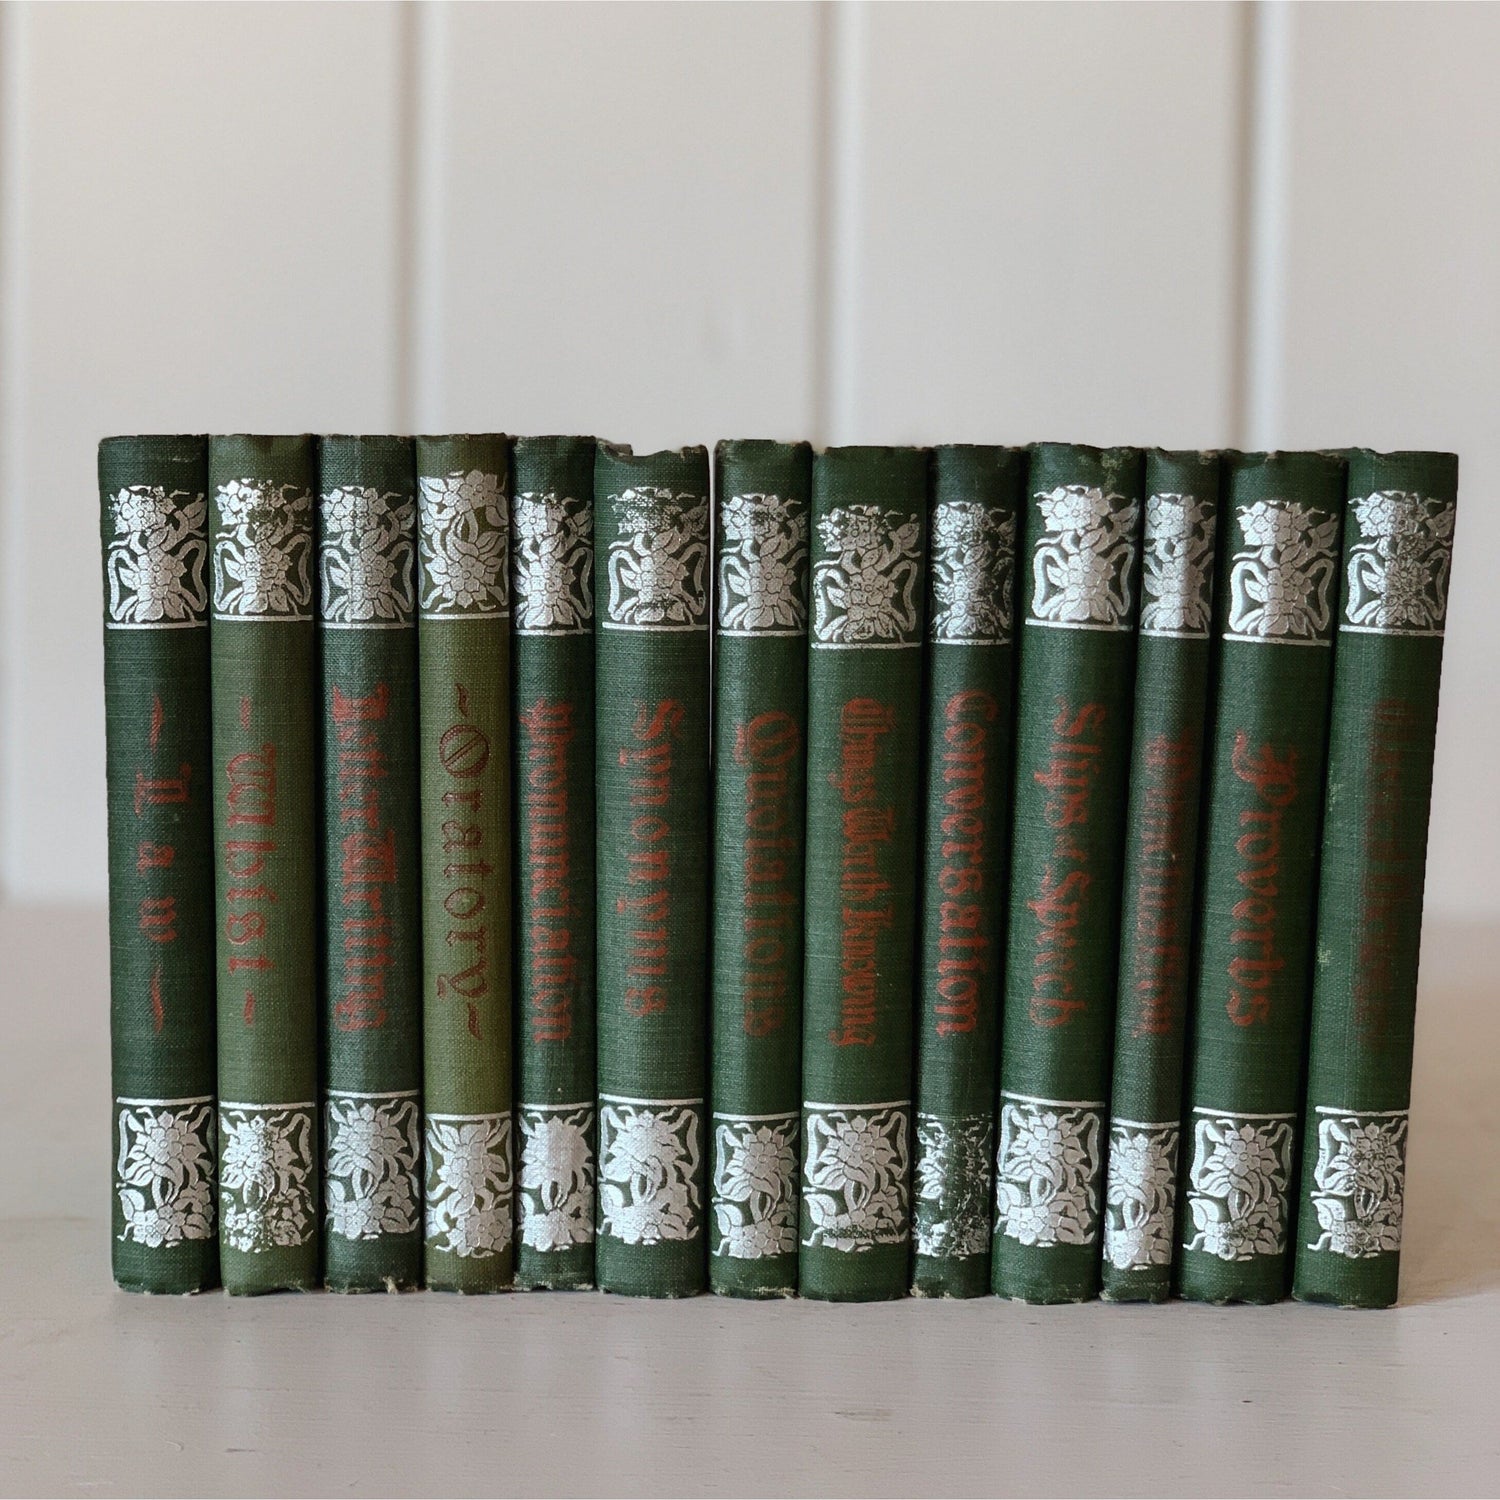 Penn Publishing Handbooks, Antique Green Books for Display, 1900s